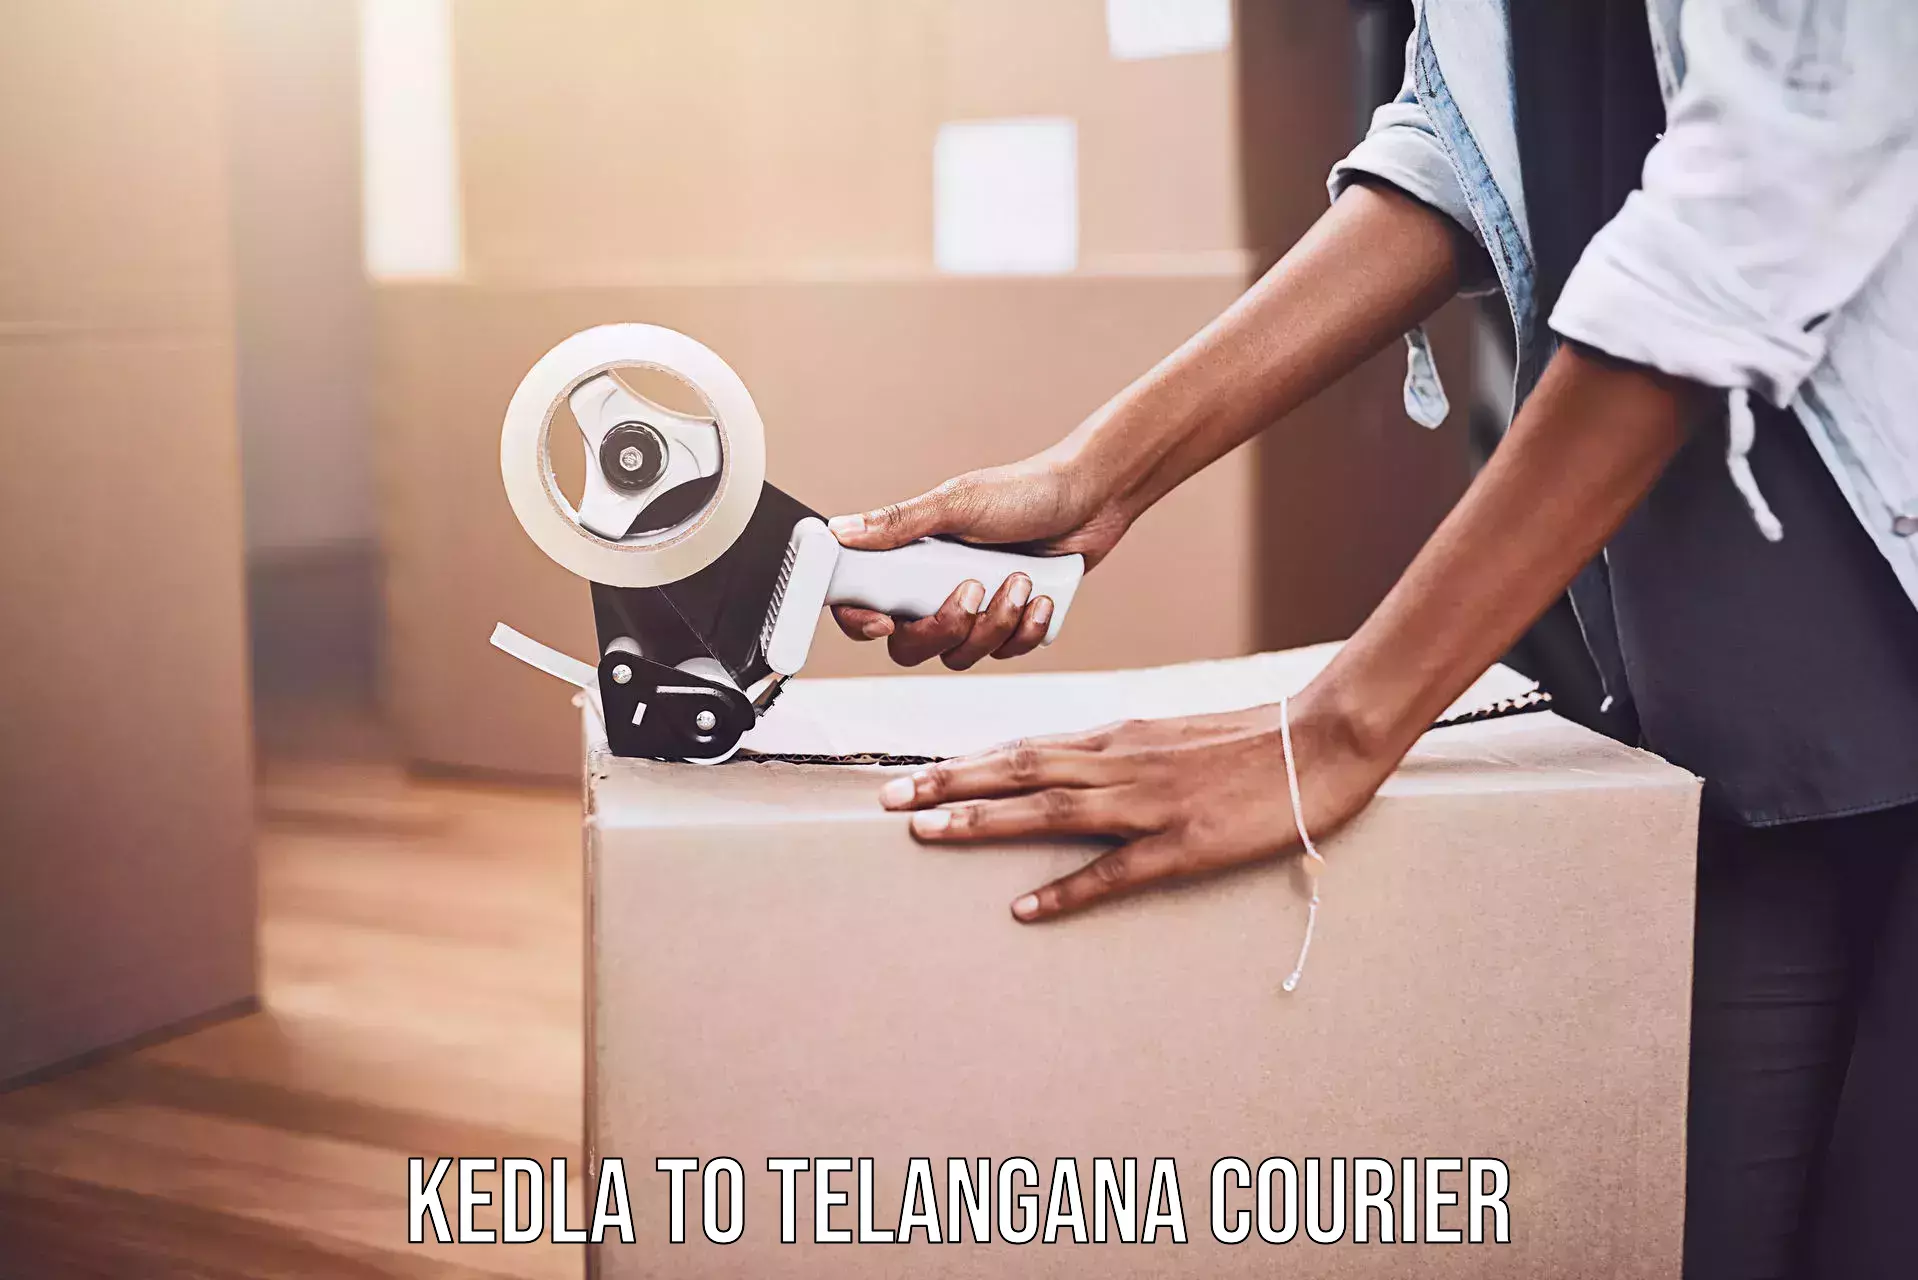 Premium courier services Kedla to Mahabubnagar